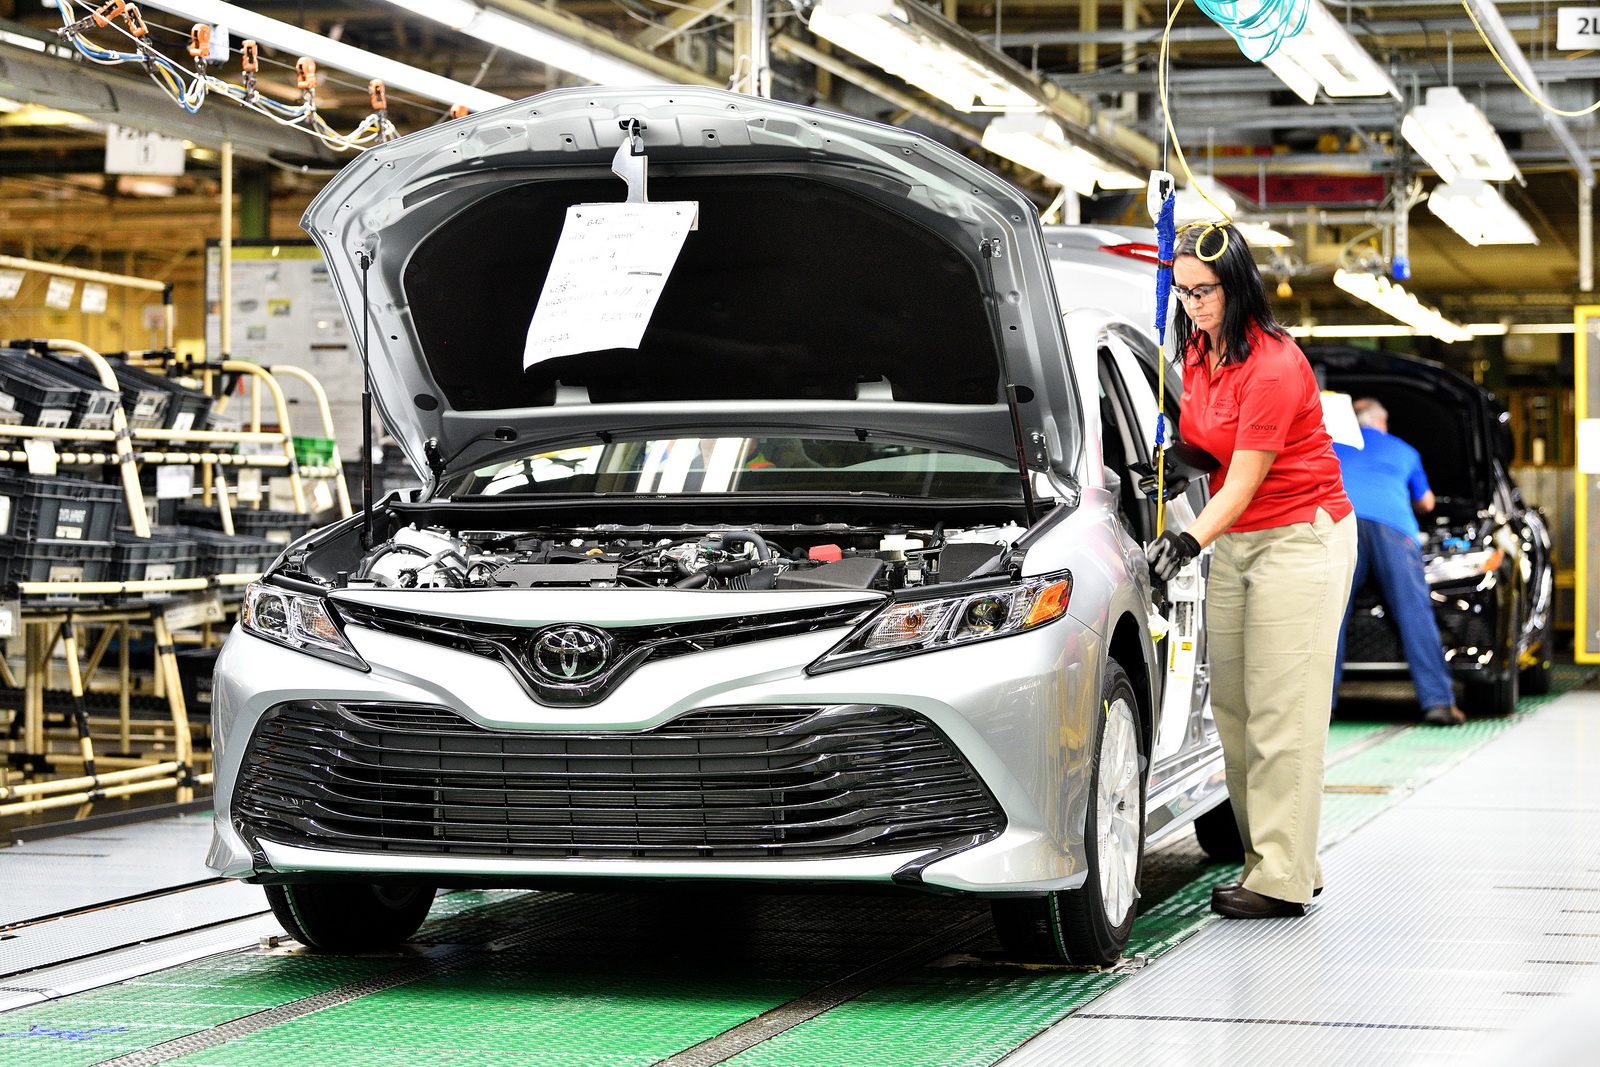 Toyota xác nhận những chiếc xe của họ sản xuất từ thép Kobe vẫn đạt tiêu chuẩn an toàn